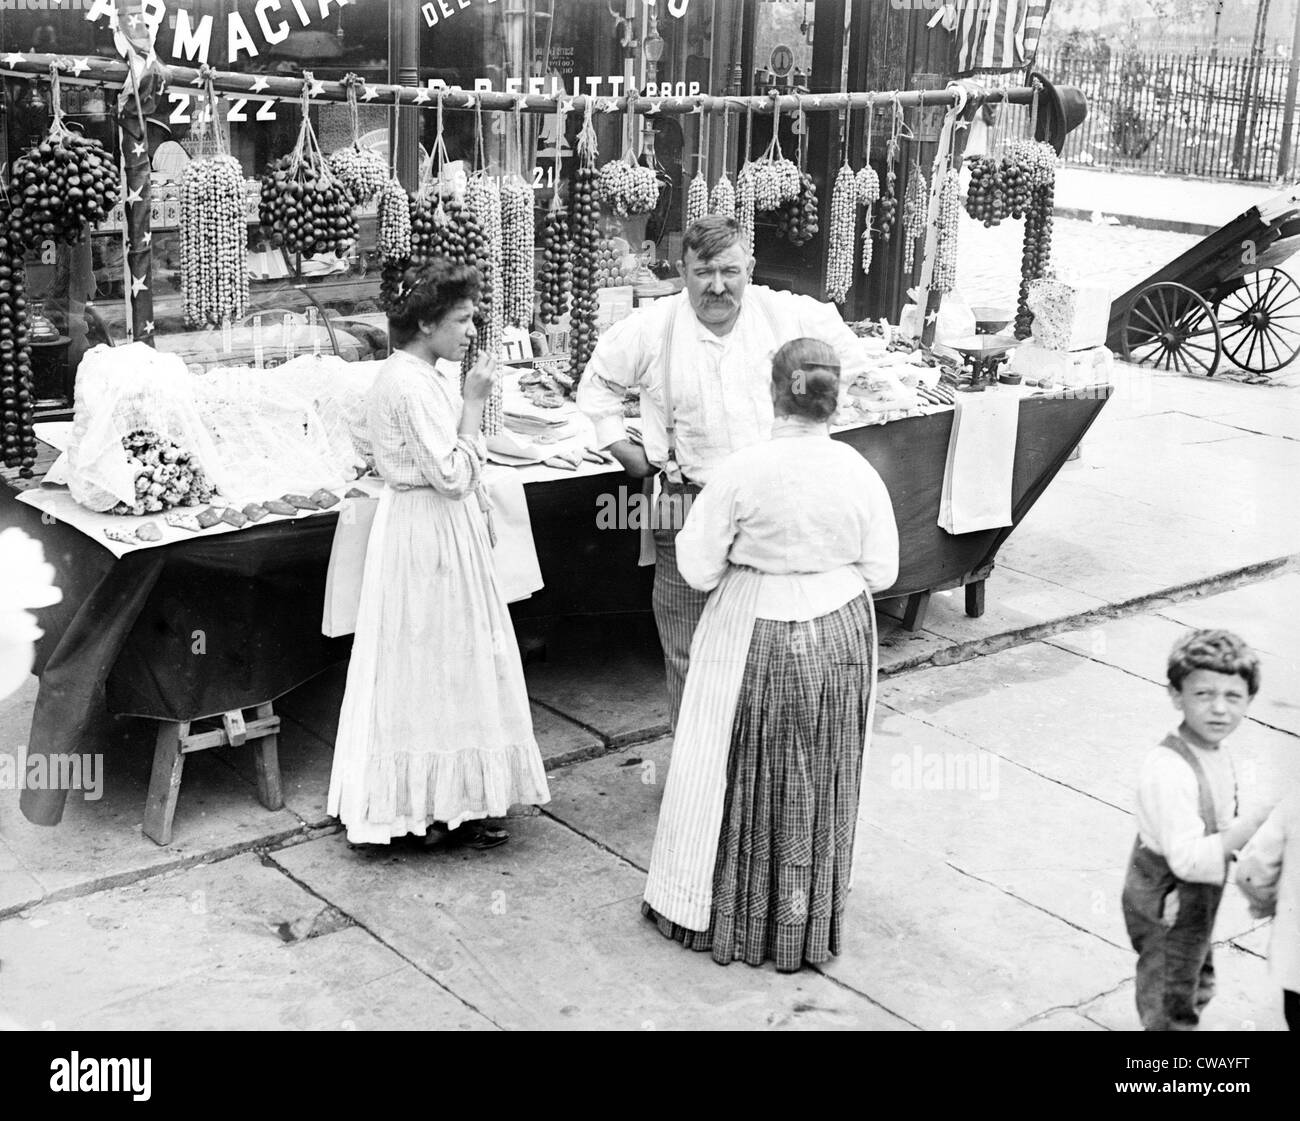 Little Italy - fornitore con della pasticceria o della biscotteria visualizzati durante un festival di New York, ca. 1930s Foto Stock